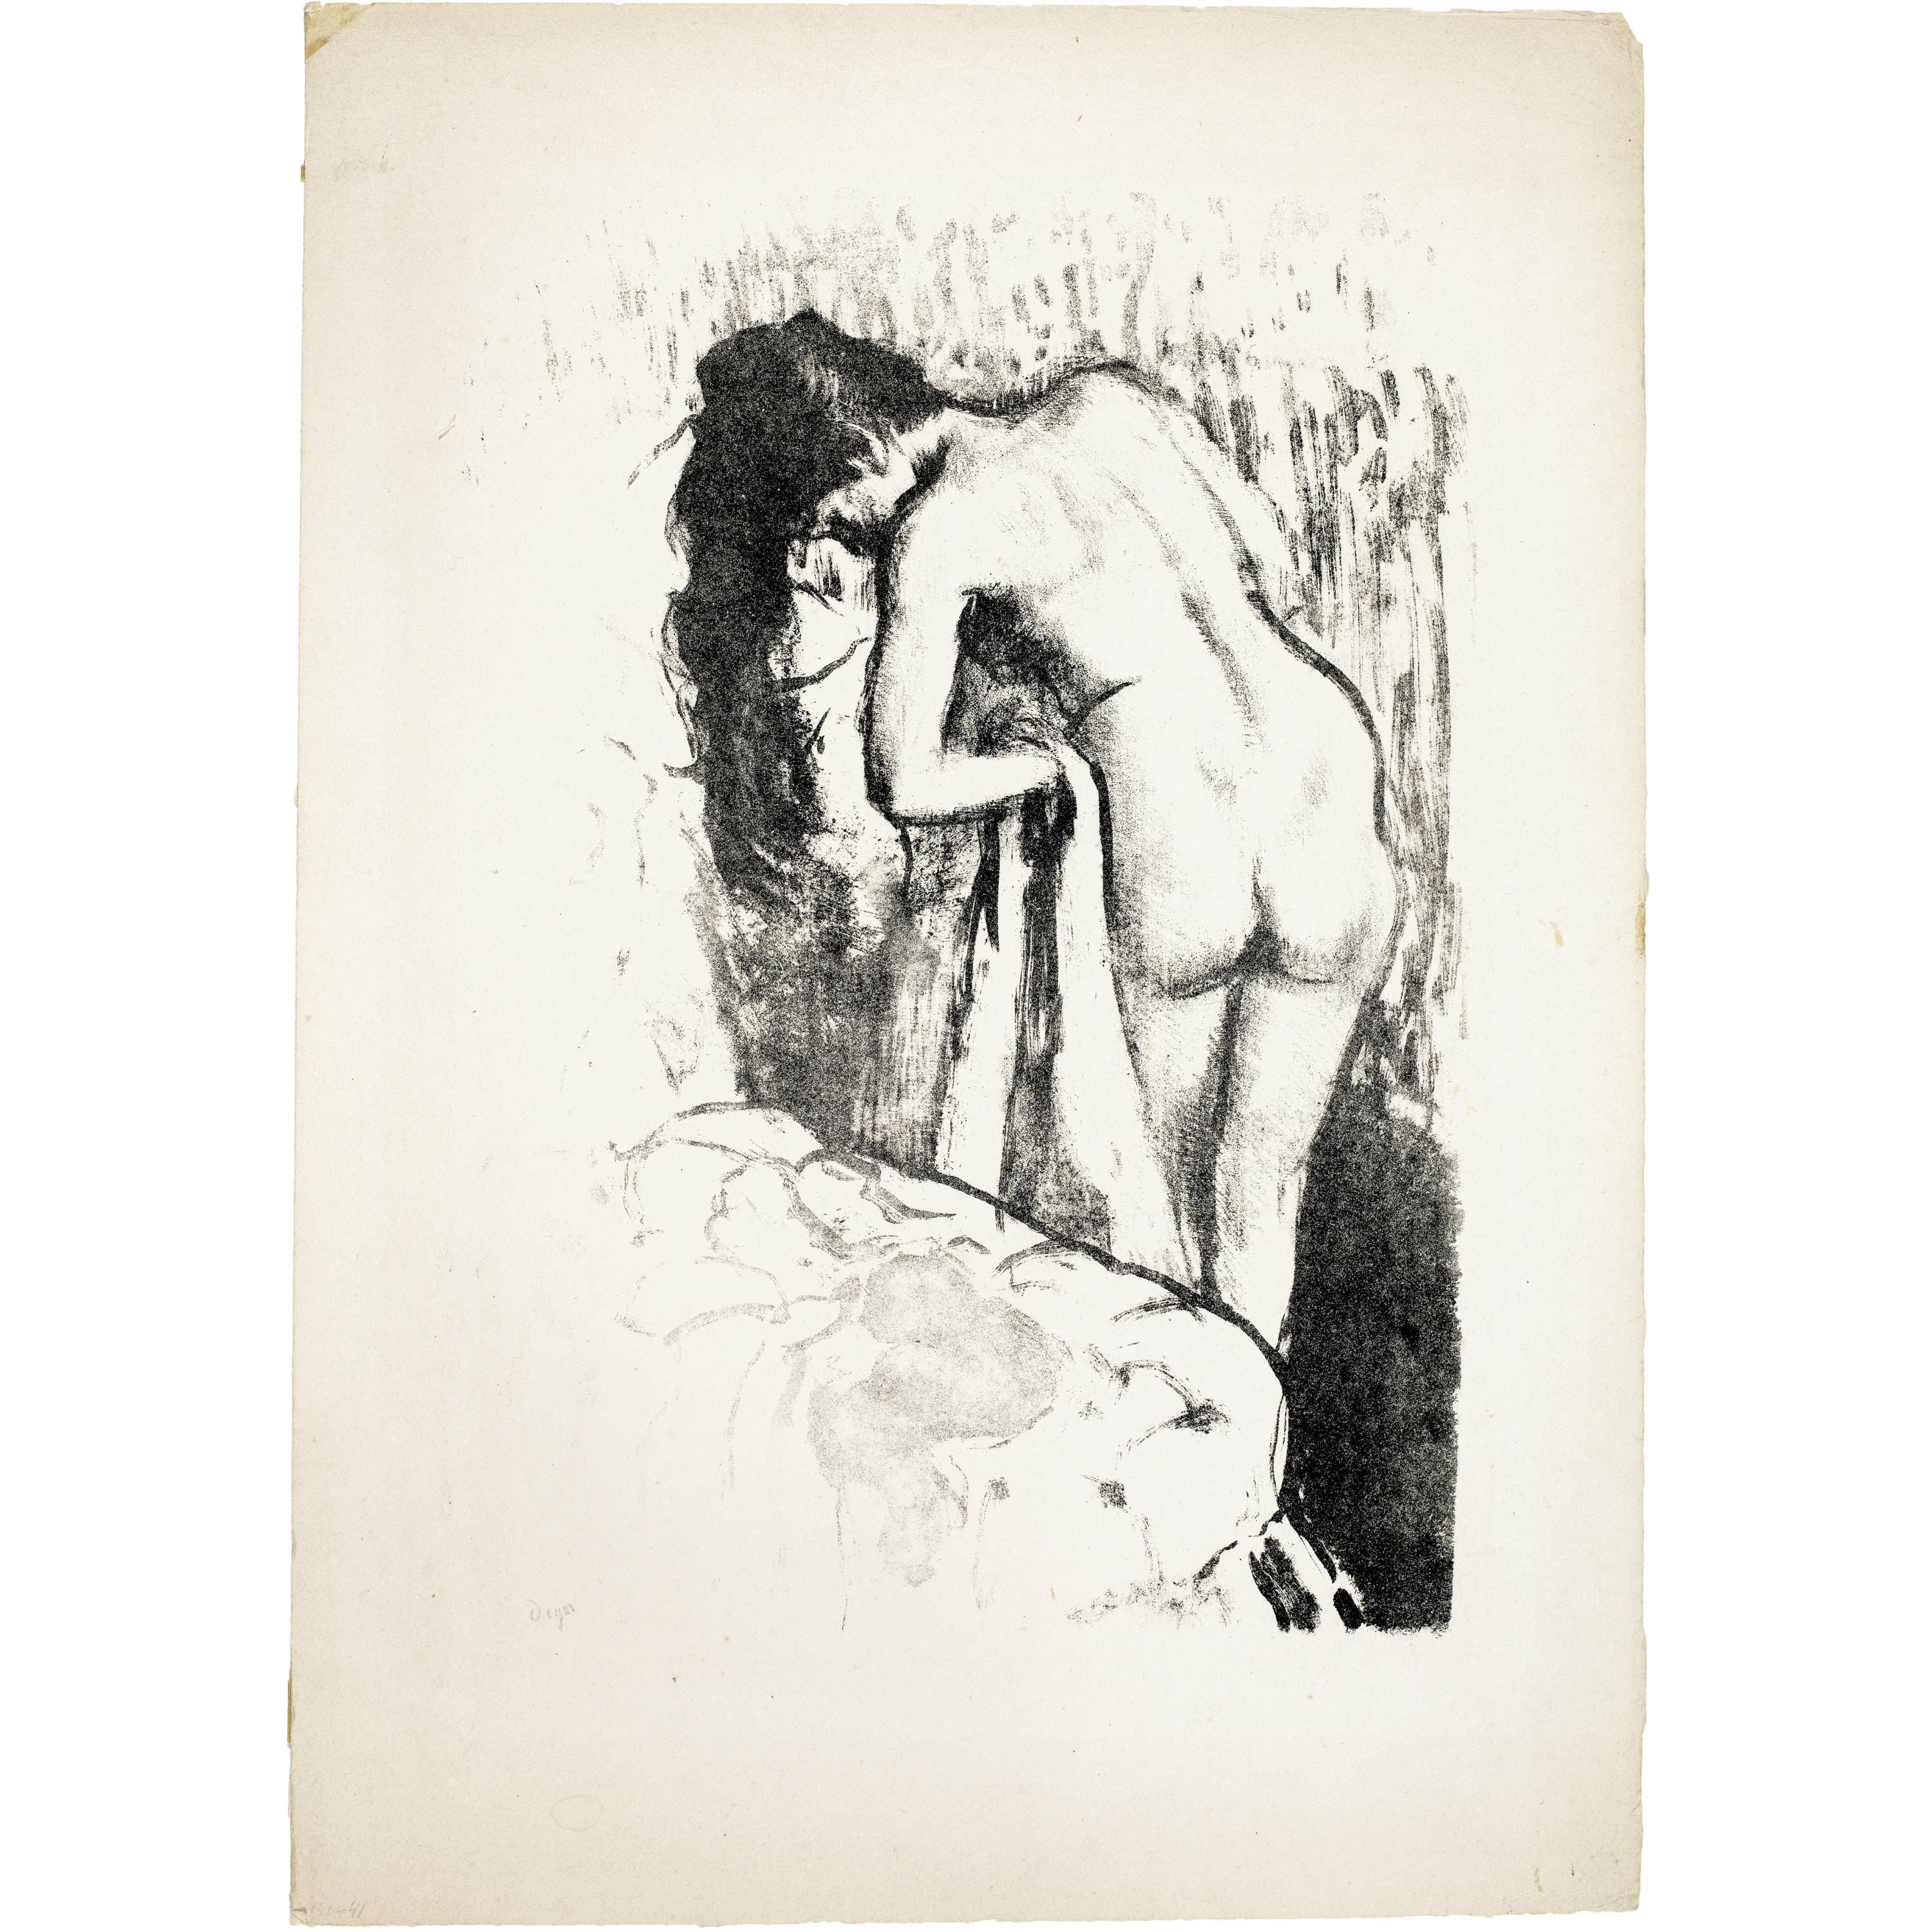 Femme nue, debout - Louvre Collections